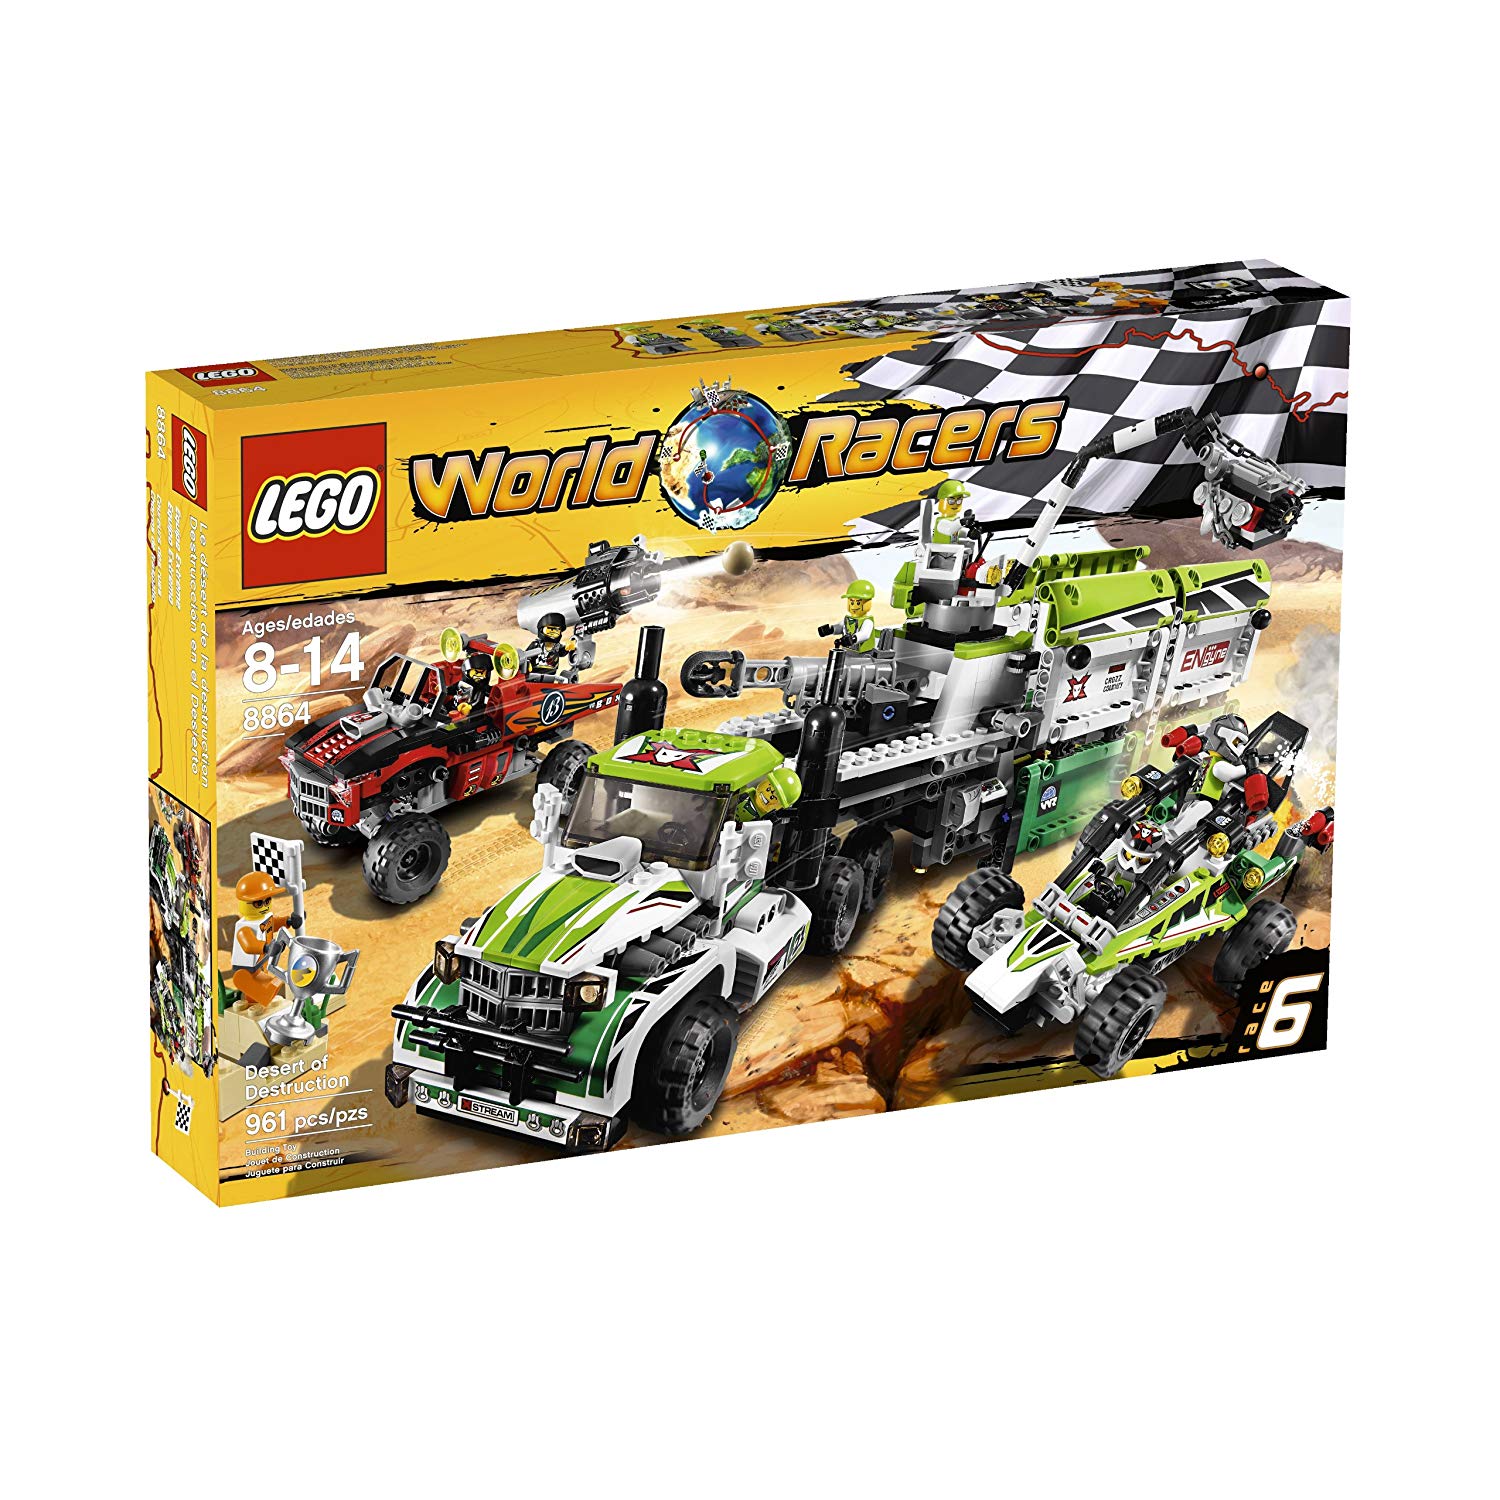 Lego World Racers 8864 Desert Of Destruction